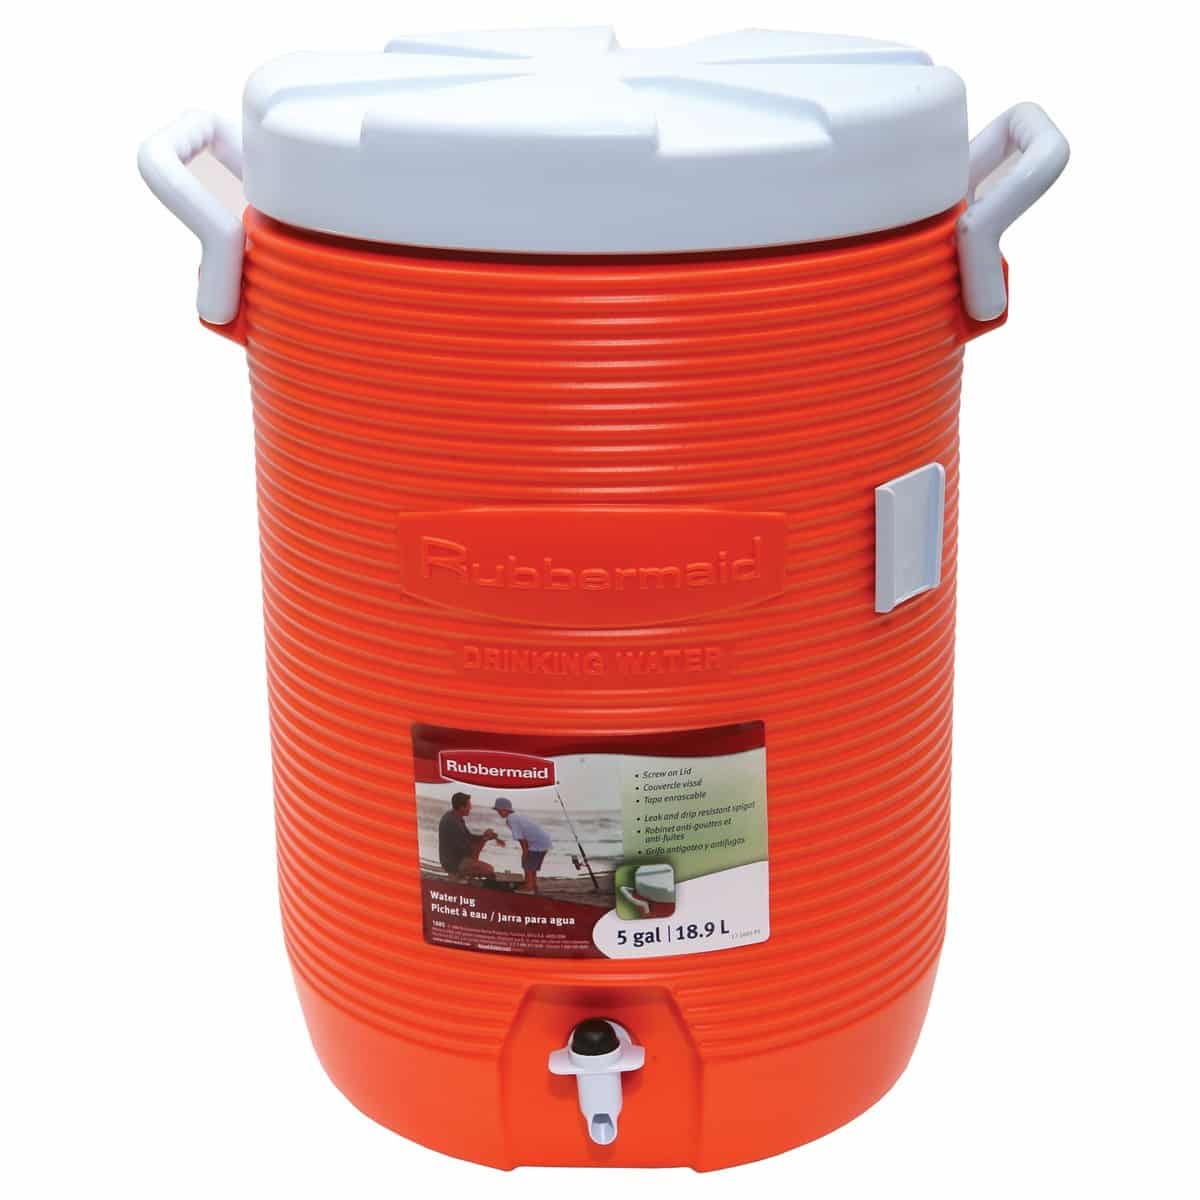 https://asrentall.com/wp-content/uploads/2013/02/5-gallon-water-cooler.jpg